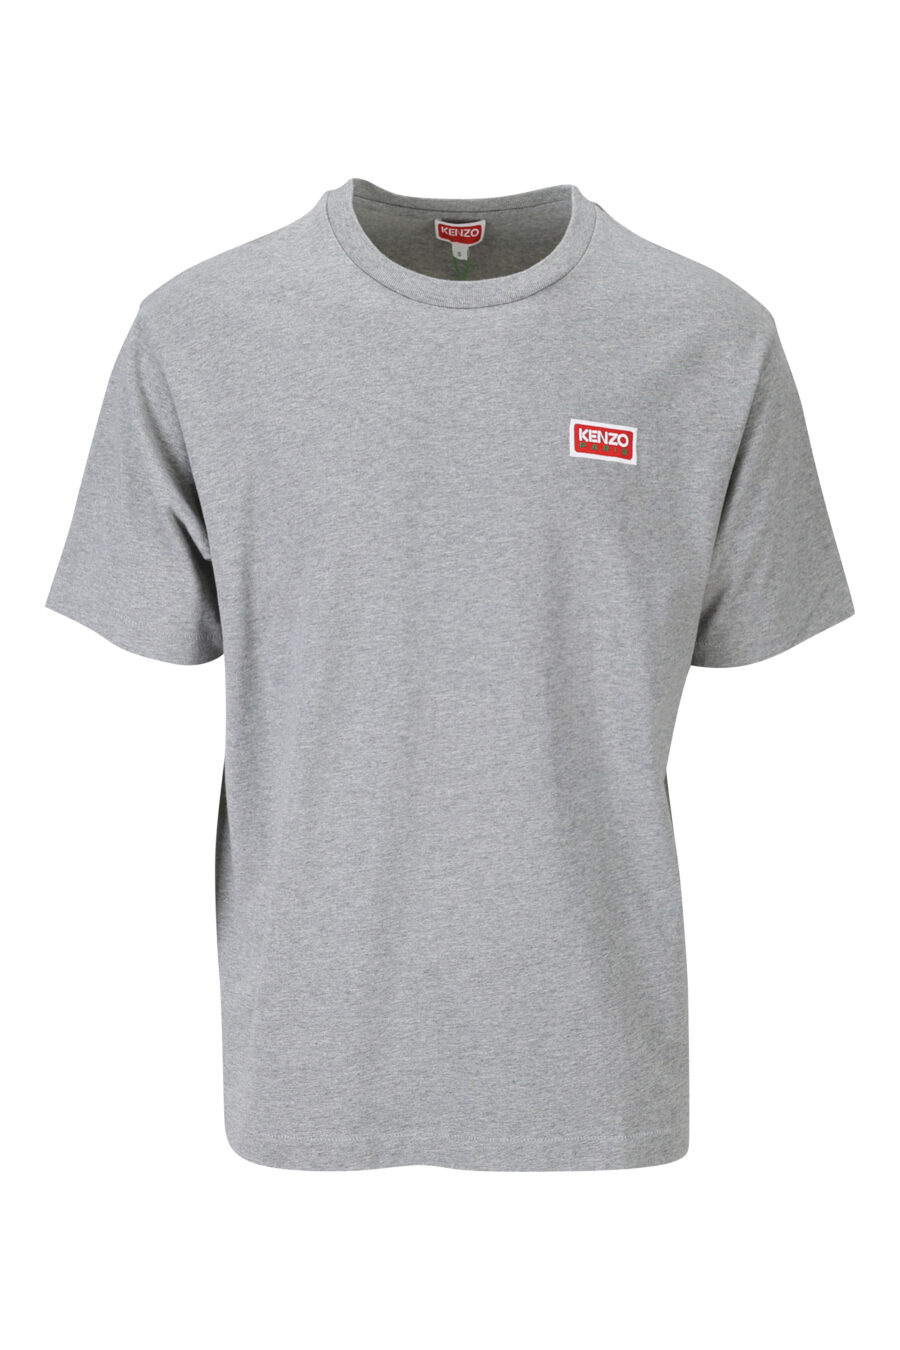 T-shirt cinzenta com minilogo "kenzo paris" - 3612230543188